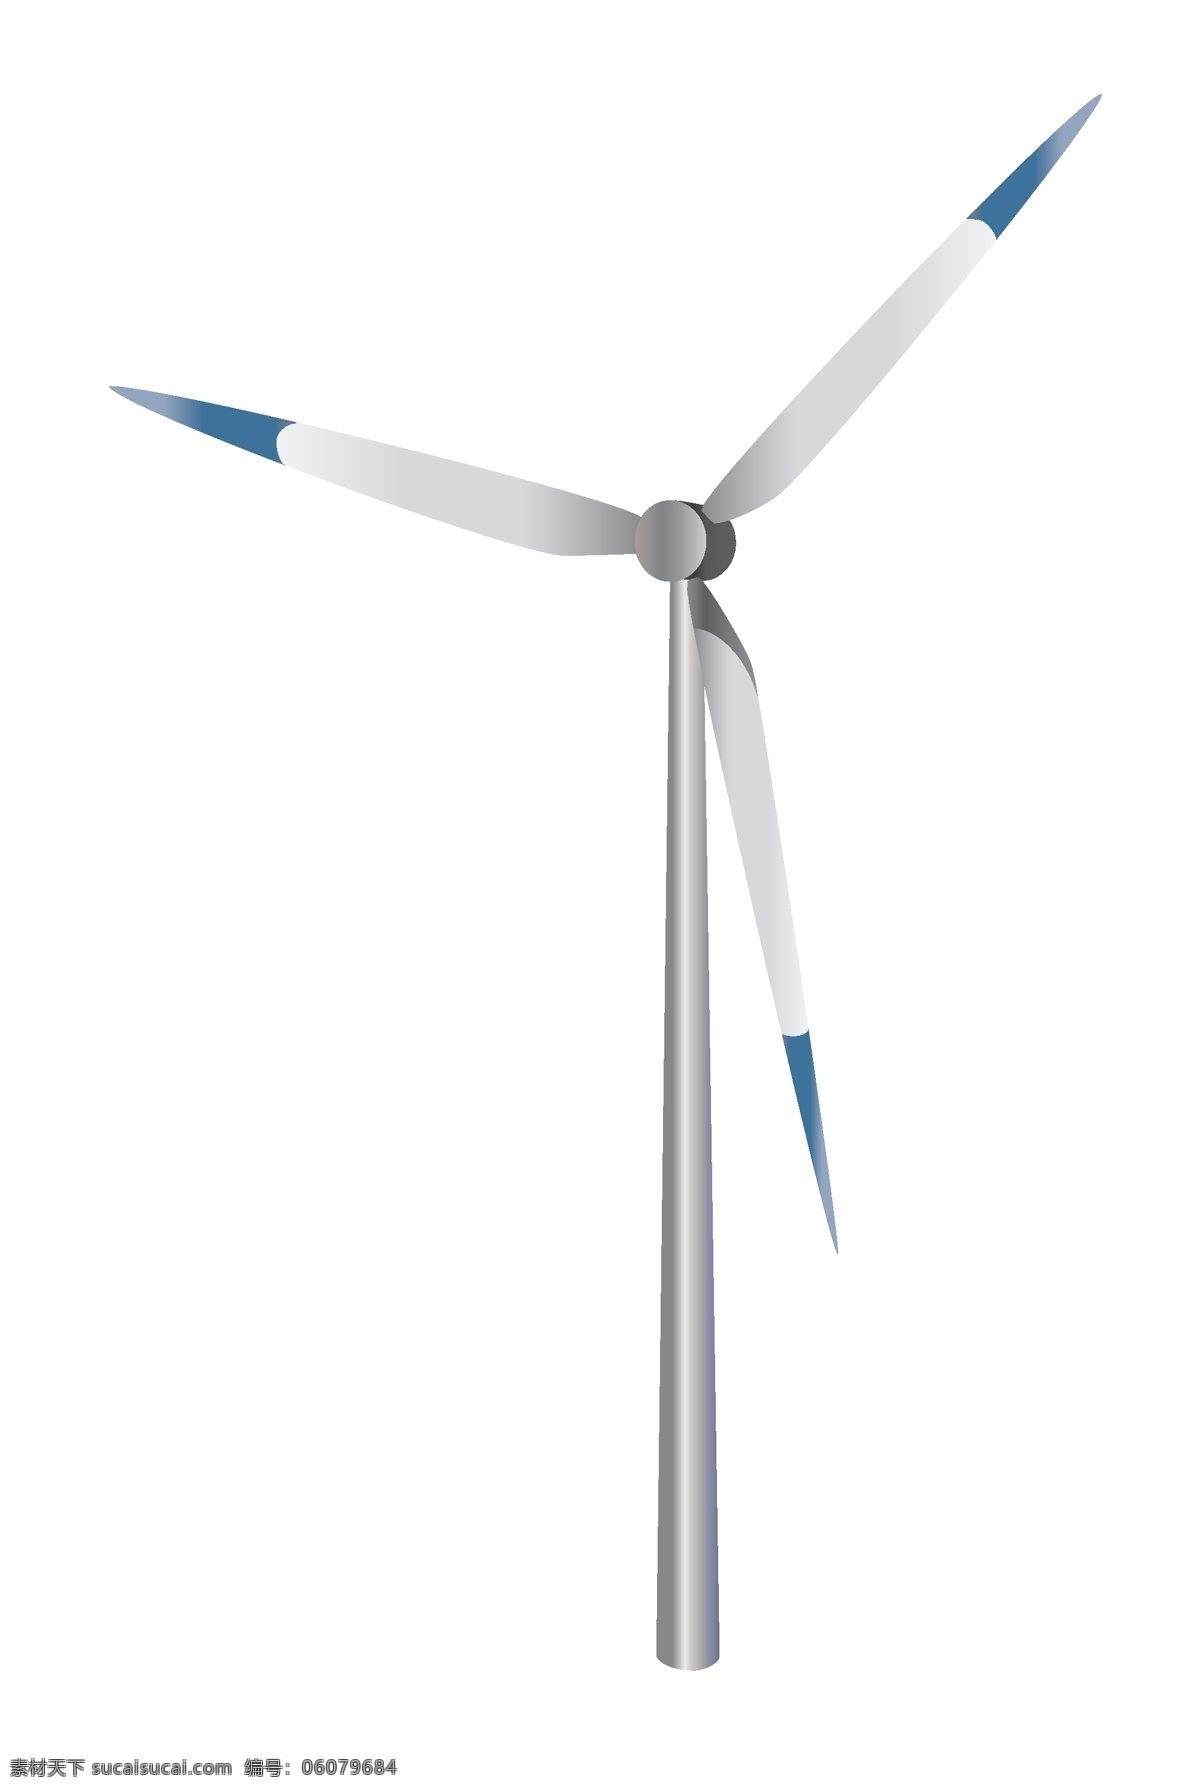 大大 扇叶 风车 插画 蓝色的扇叶 卡通插画 风车插画 扇叶插画 风力发电 风车环保 转动的风车